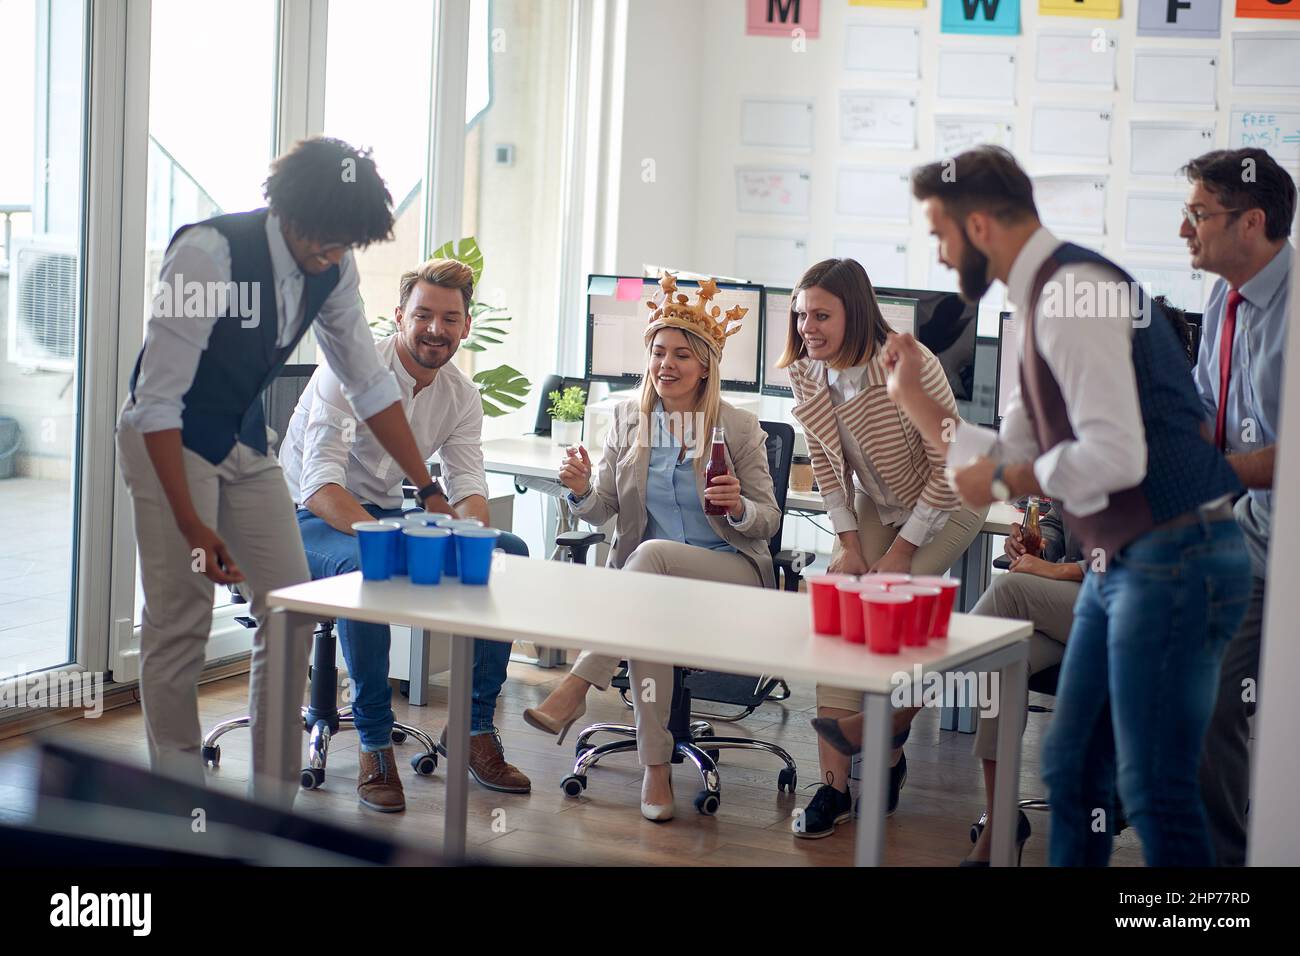 Un groupe d'employés joyeux joue pendant une pause au travail dans une atmosphère agréable au bureau. Employés, travail, bureau Banque D'Images